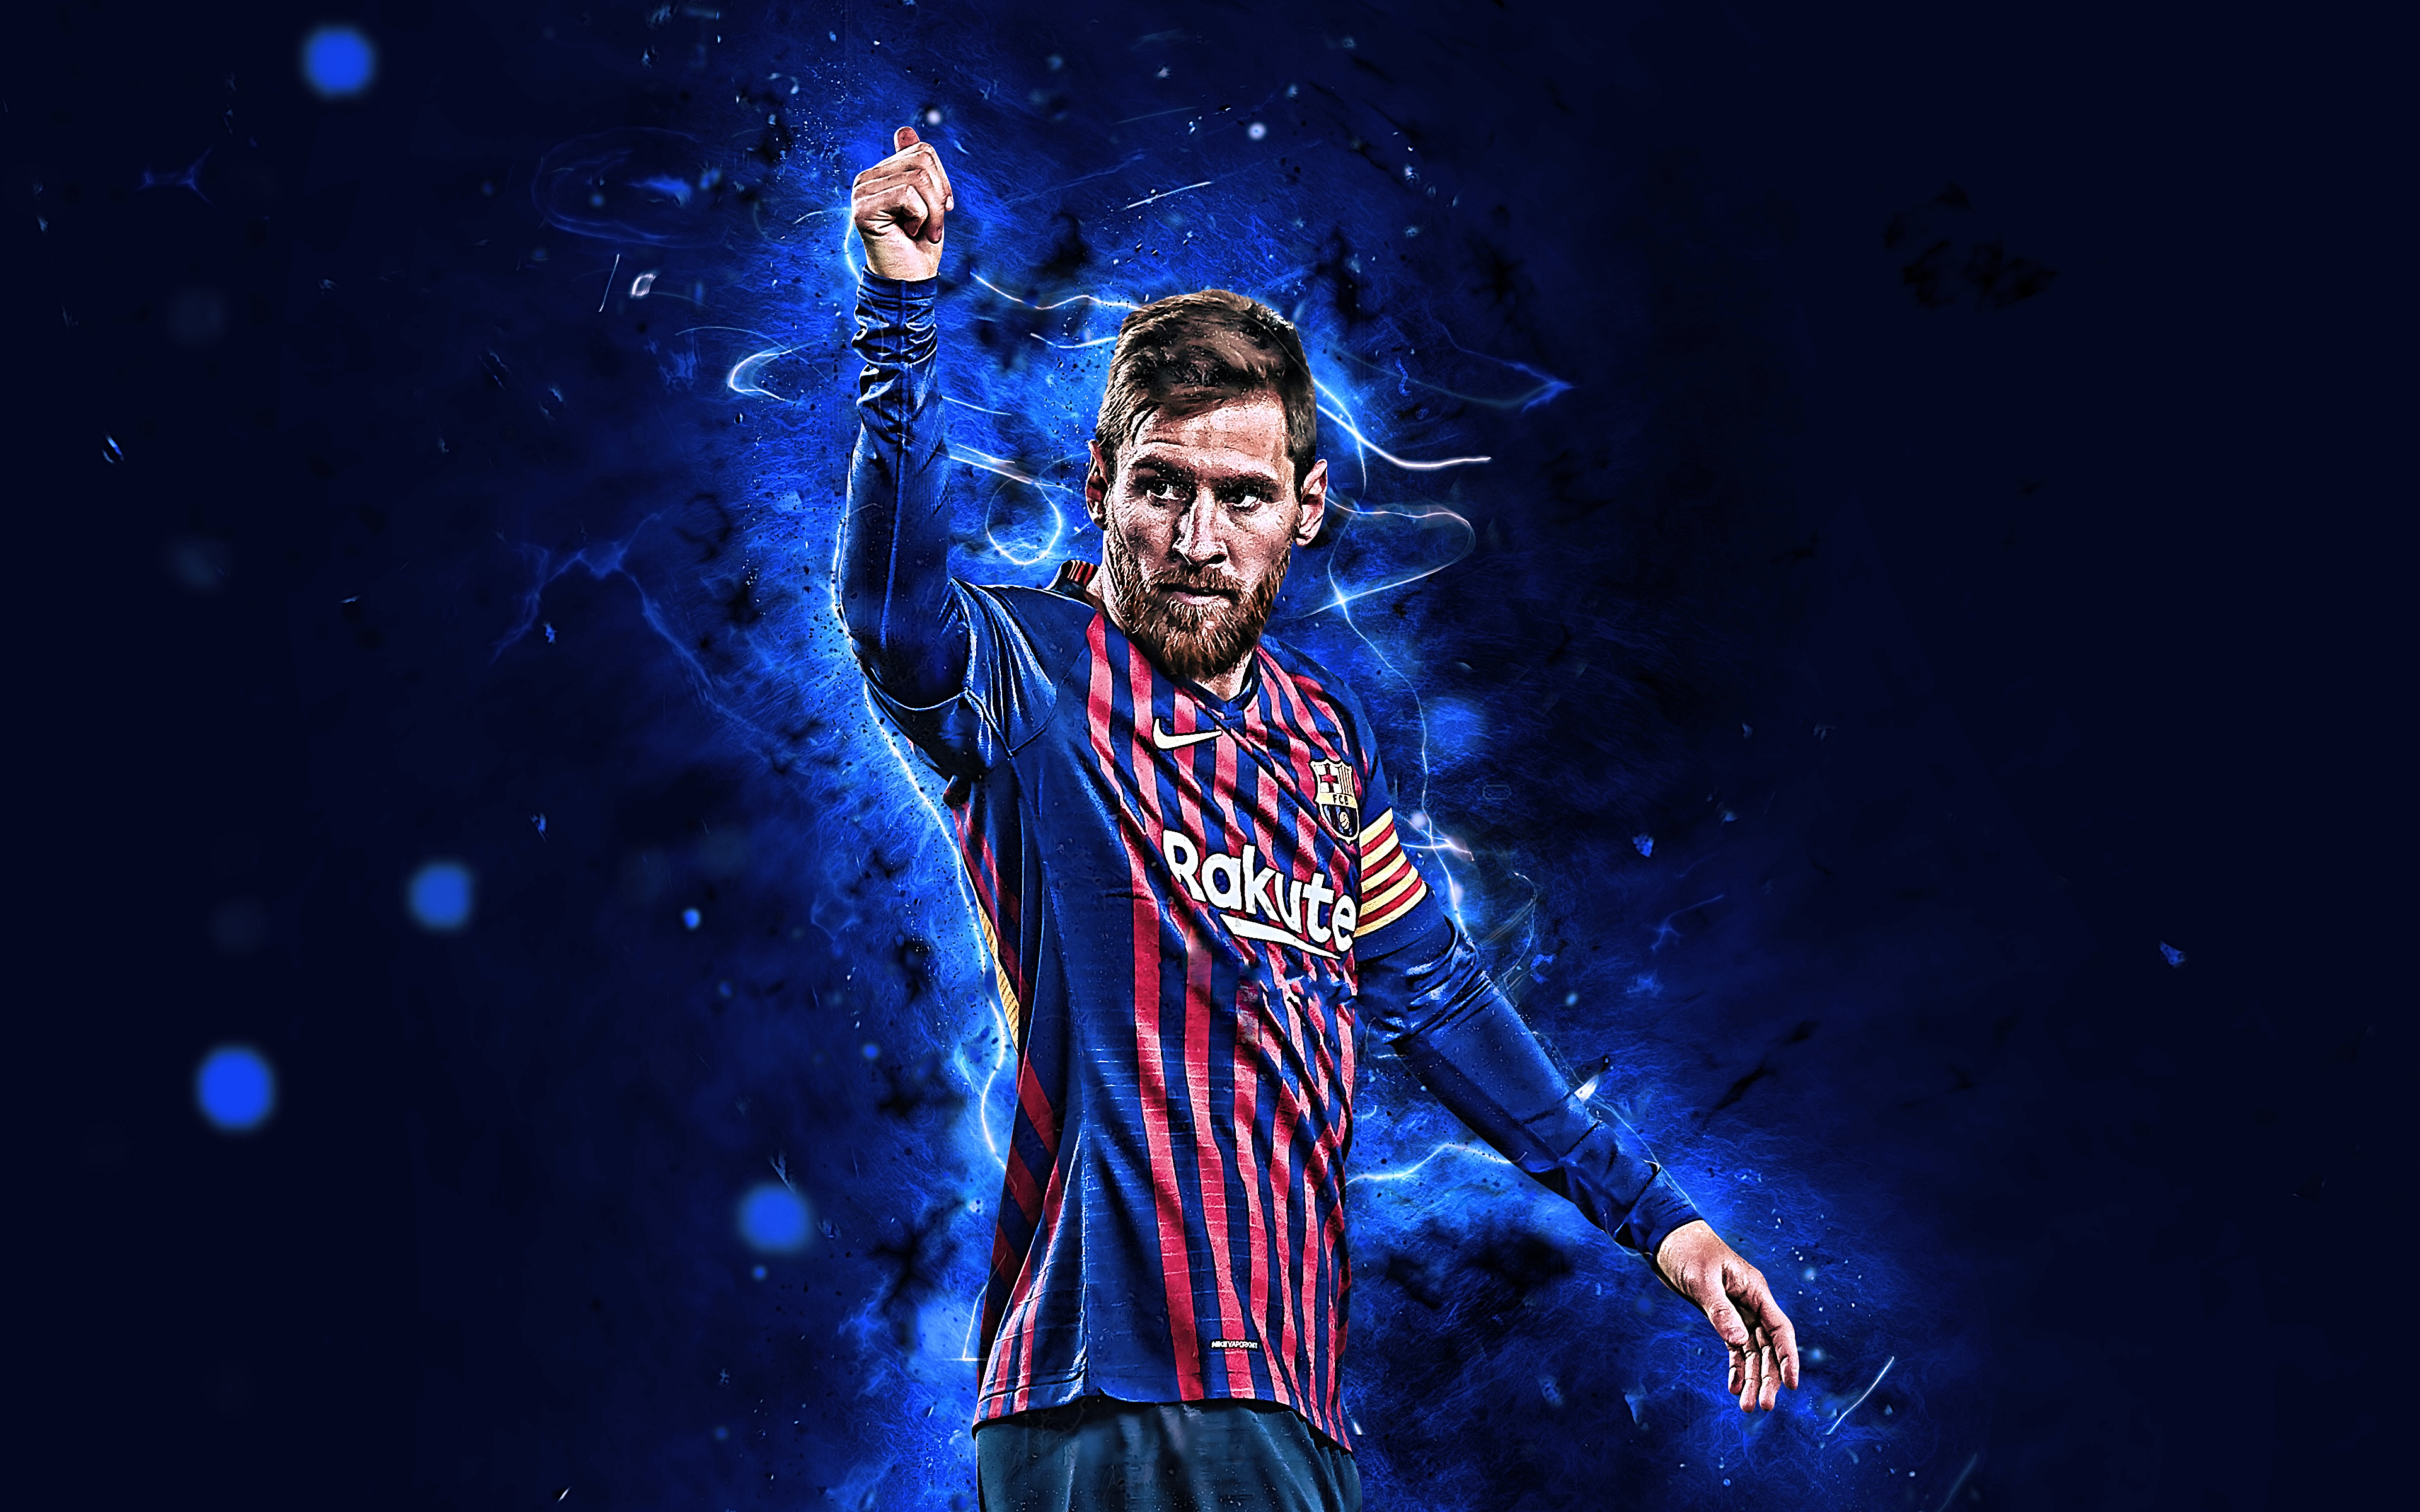 Hình nền Desktop cao cấp, bố cục đẹp mắt với những hình ảnh nổi bật của bóng đá, Fc Barcelona và Lionel Messi, mang đến cho bạn trải nghiệm vô cùng tuyệt vời trong mỗi lần sử dụng máy tính.